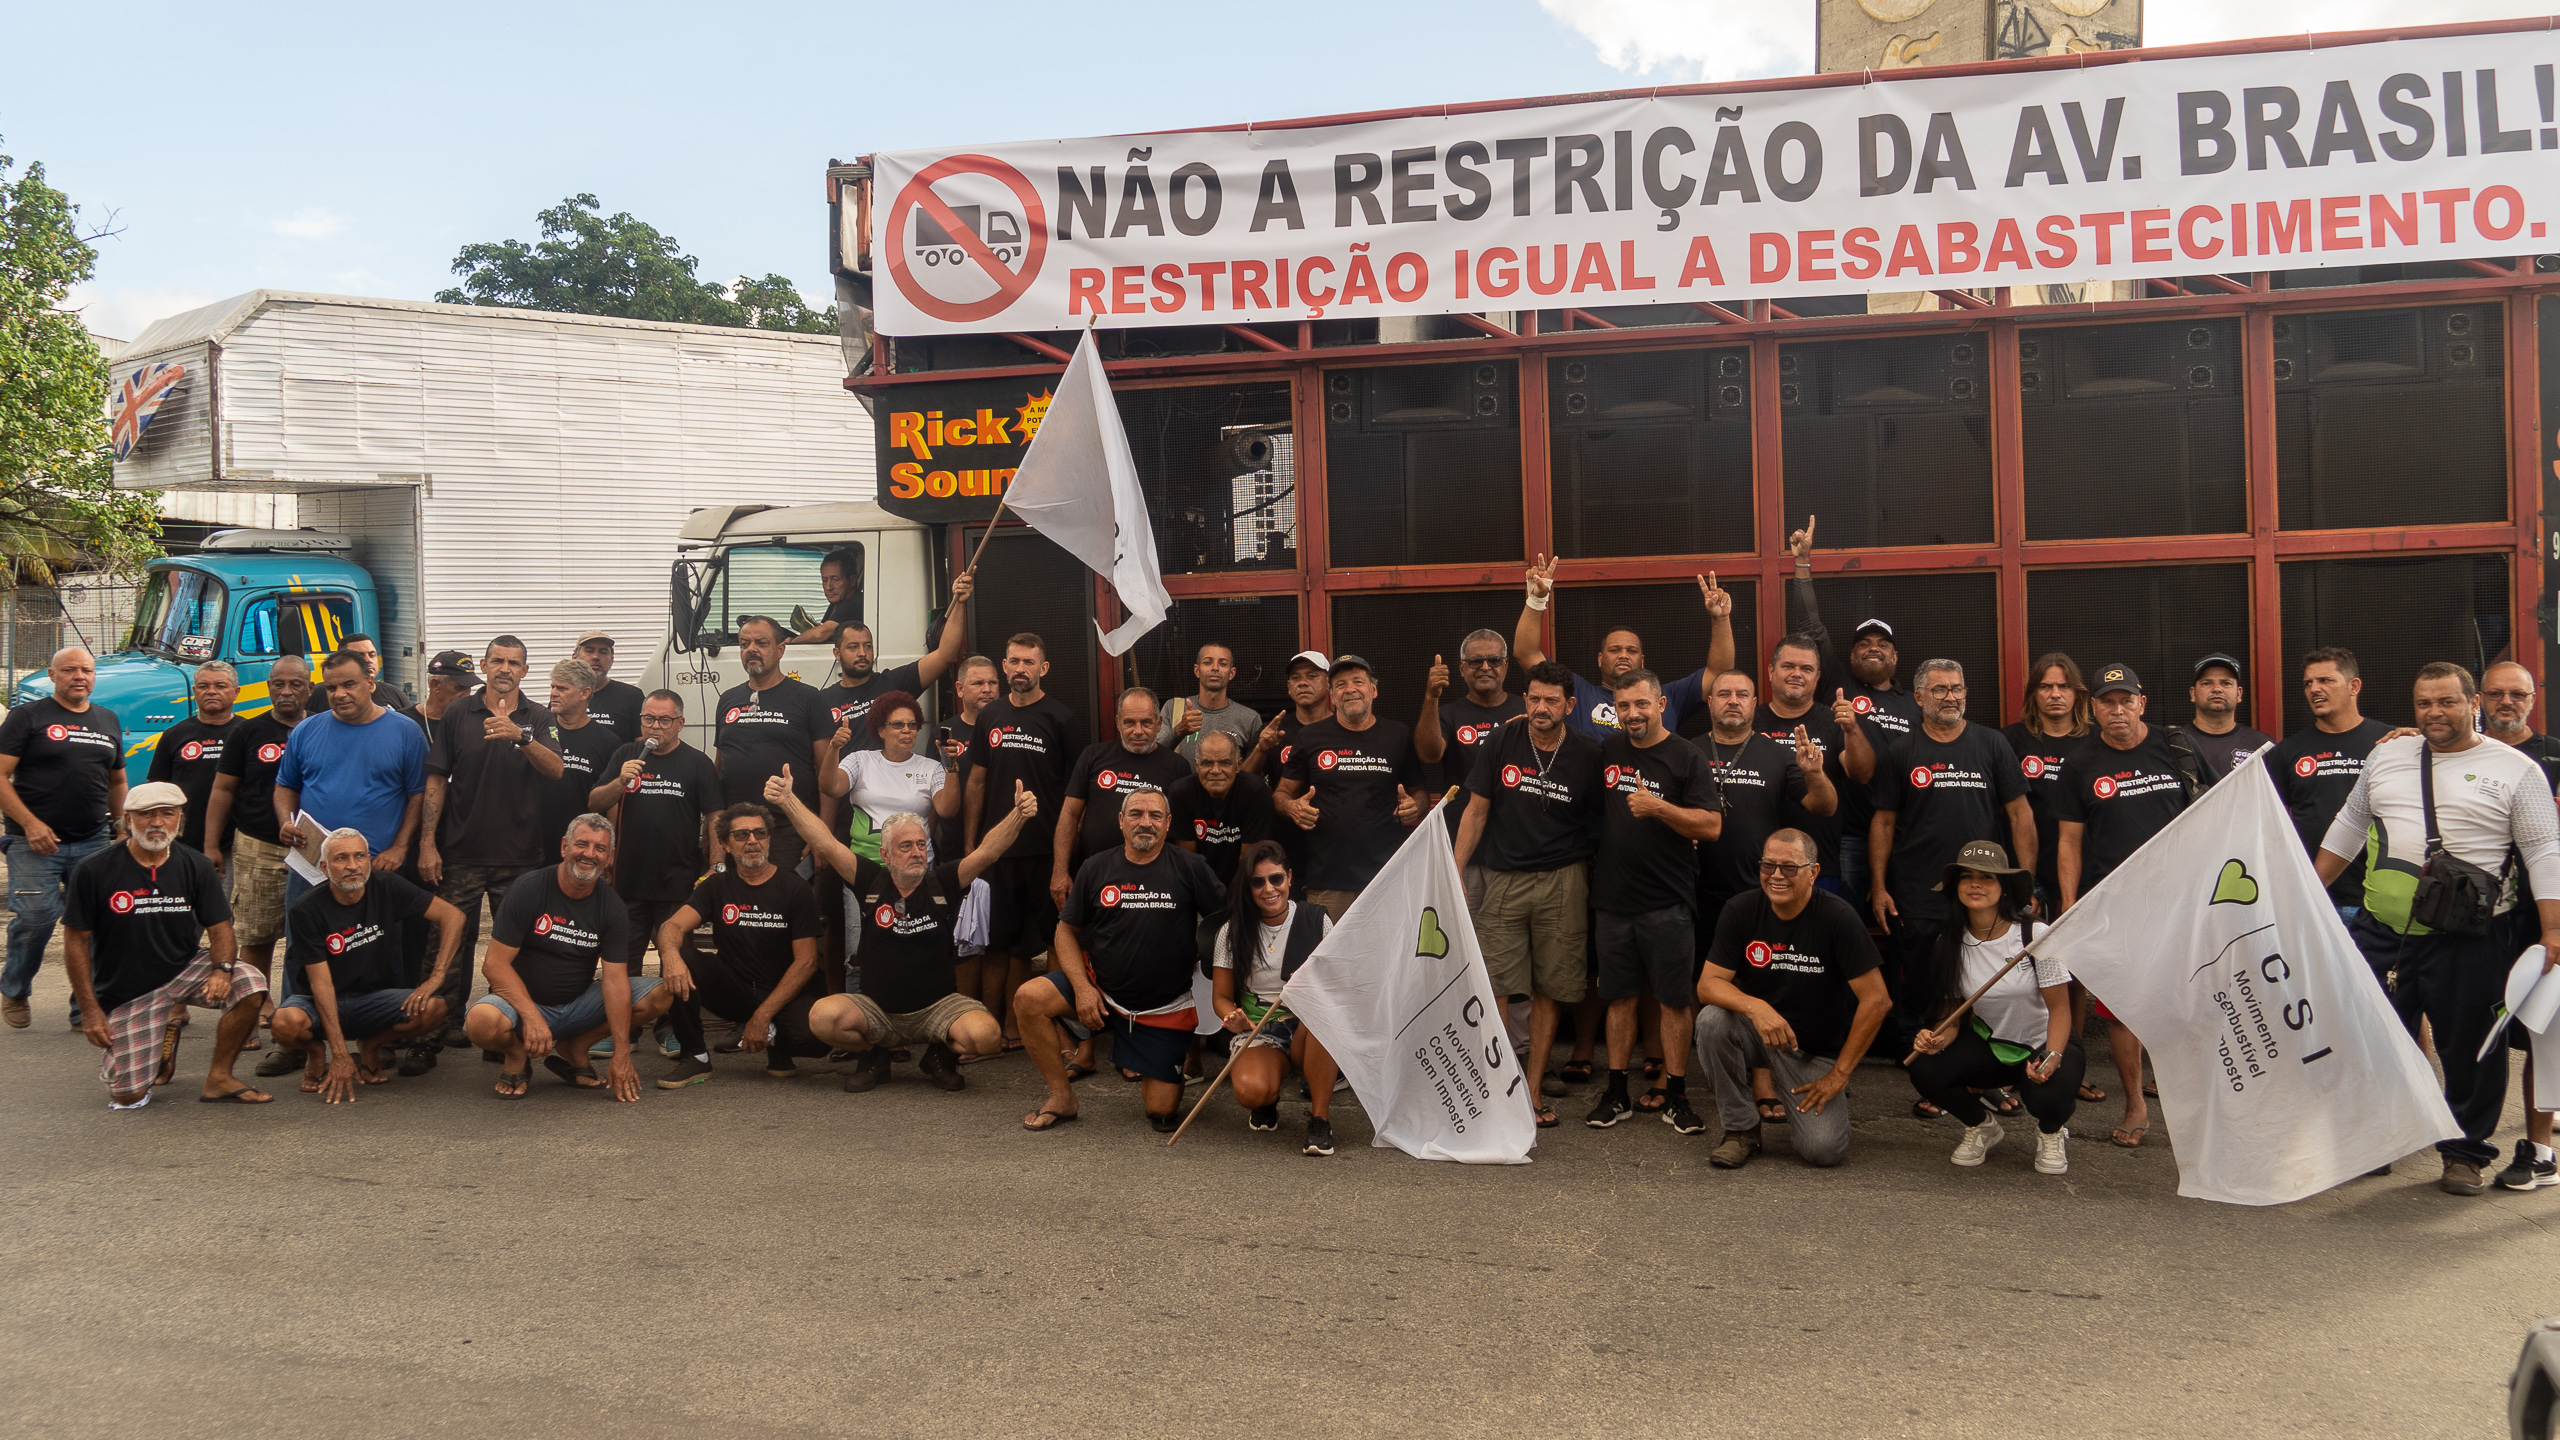 Protesto de caminhoneiros contra restrição na Av Brasil